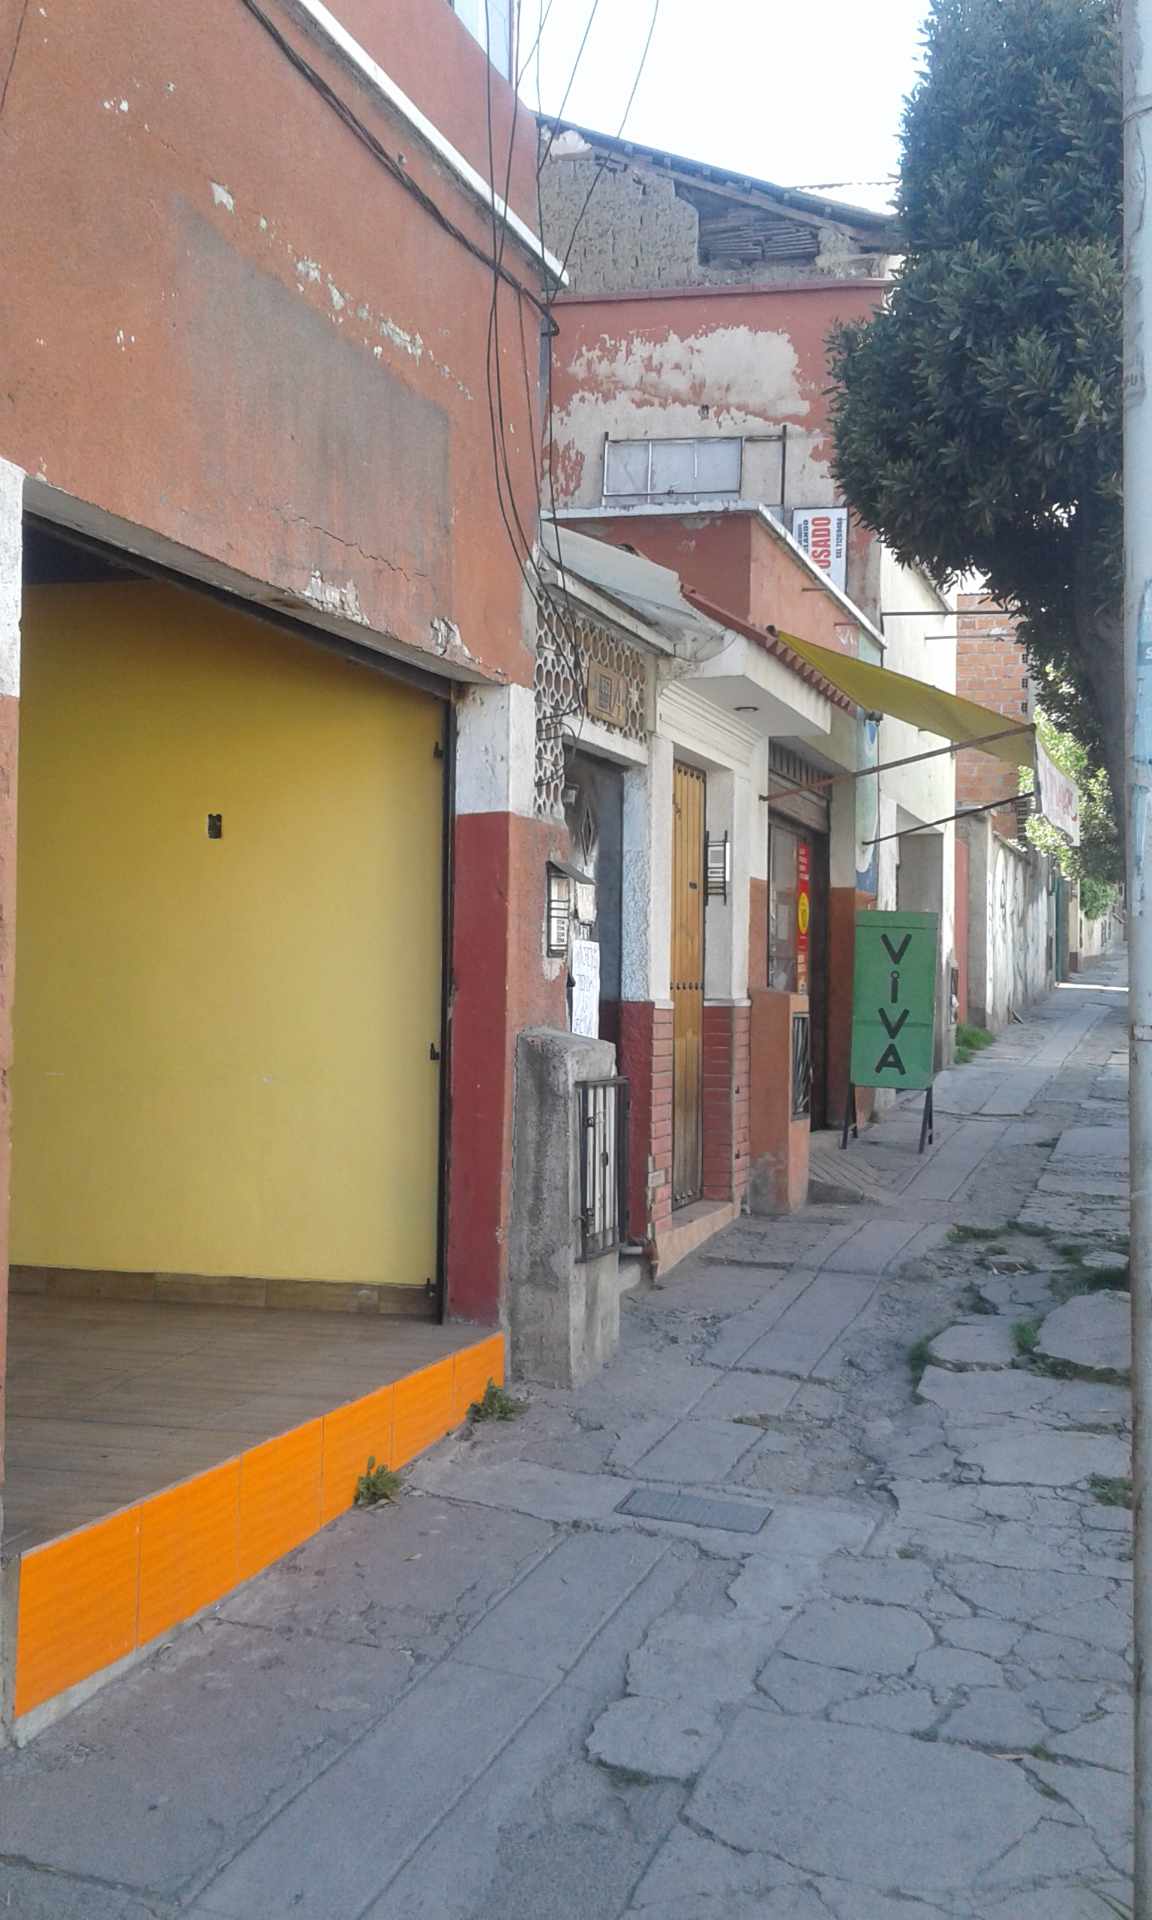 Local comercial Calle Cuba No 1652A entre Carrasco y Pasoskanki zona céntrica Foto 3